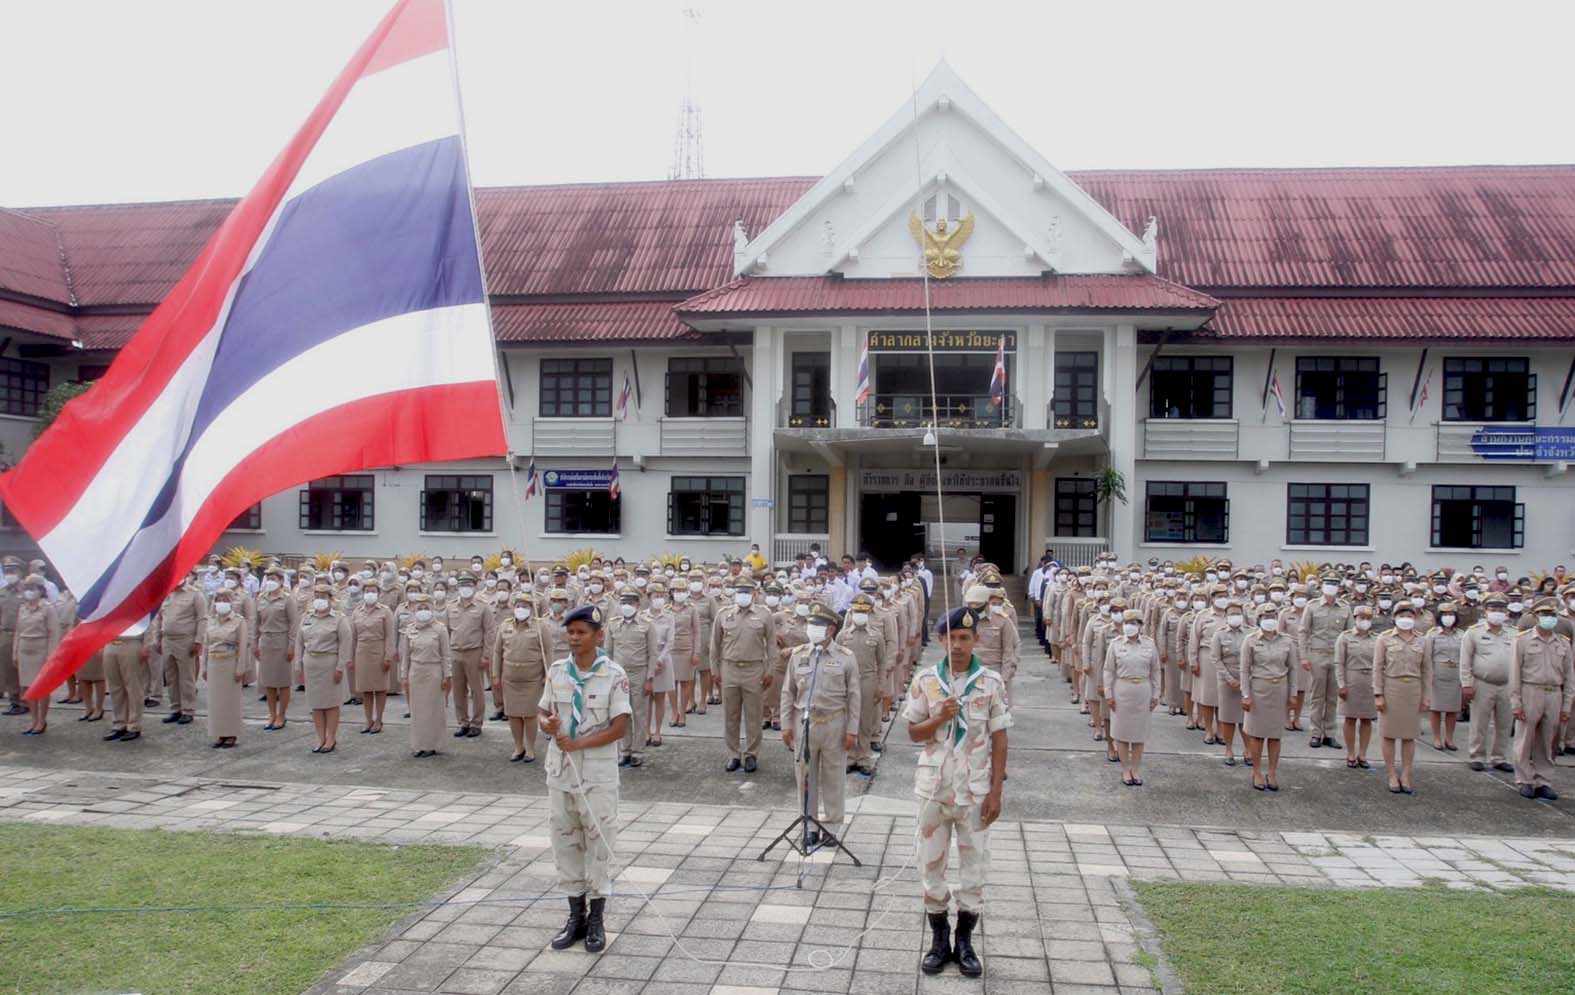 ทุกภาคส่วน พร้อมใจร่วมเคารพธงชาติและร้องเพลงชาติไทย สร้างความภาคภูมิใจของคนในชาติ เนื่องในวันธงชาติไทย  